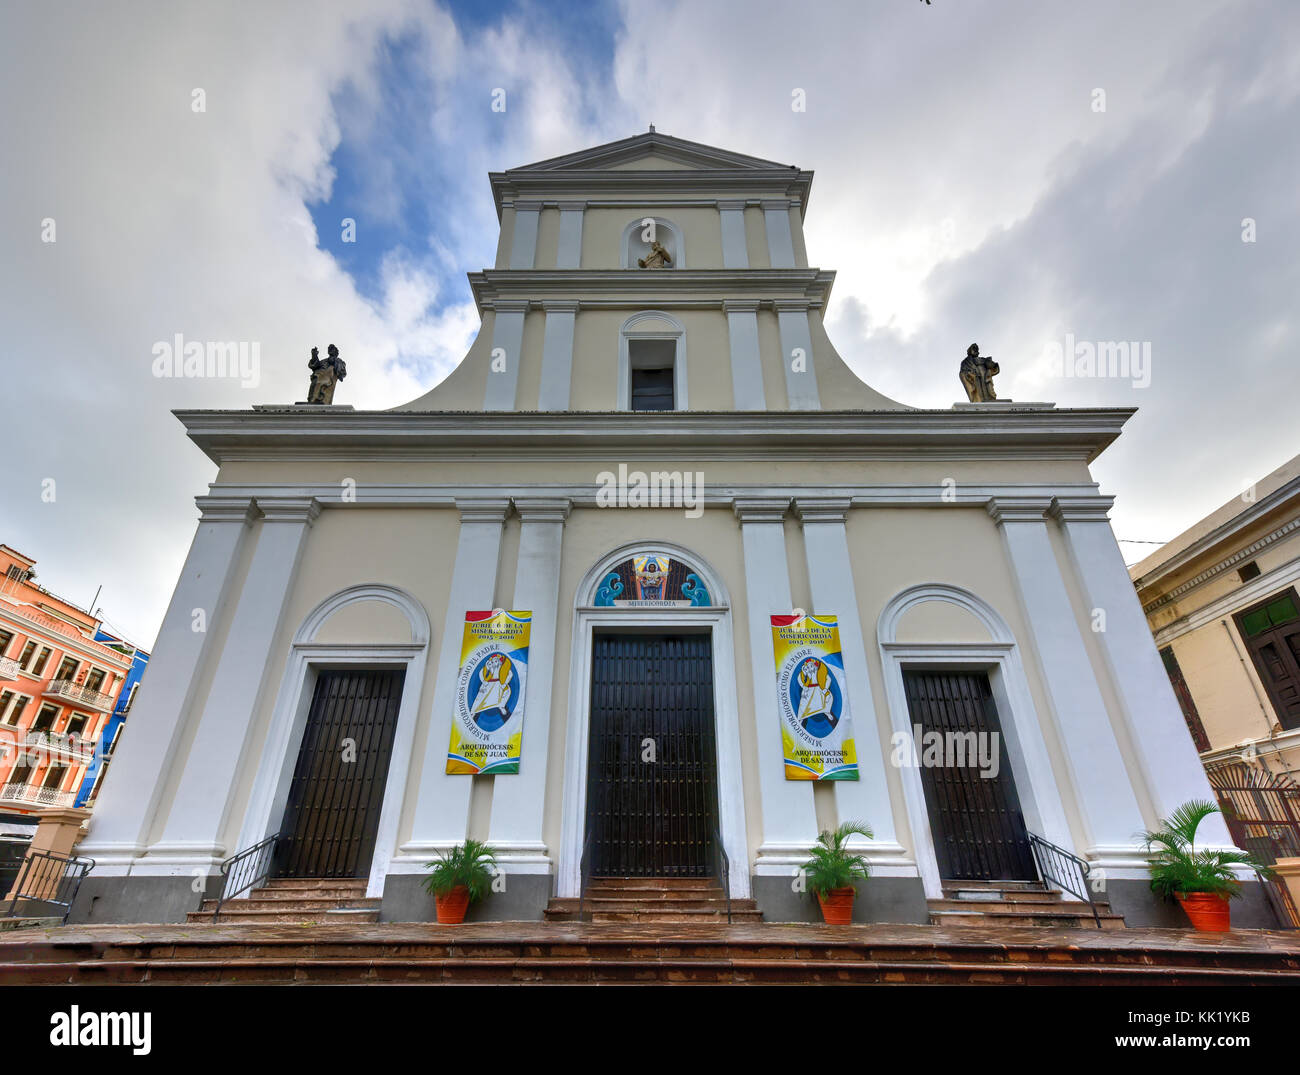 Catedral de san juan bautista es una catedral católica romana en el Viejo San  Juan, Puerto Rico. Esta iglesia se construyó en 1521 y es la más antigua  iglesia en th Fotografía